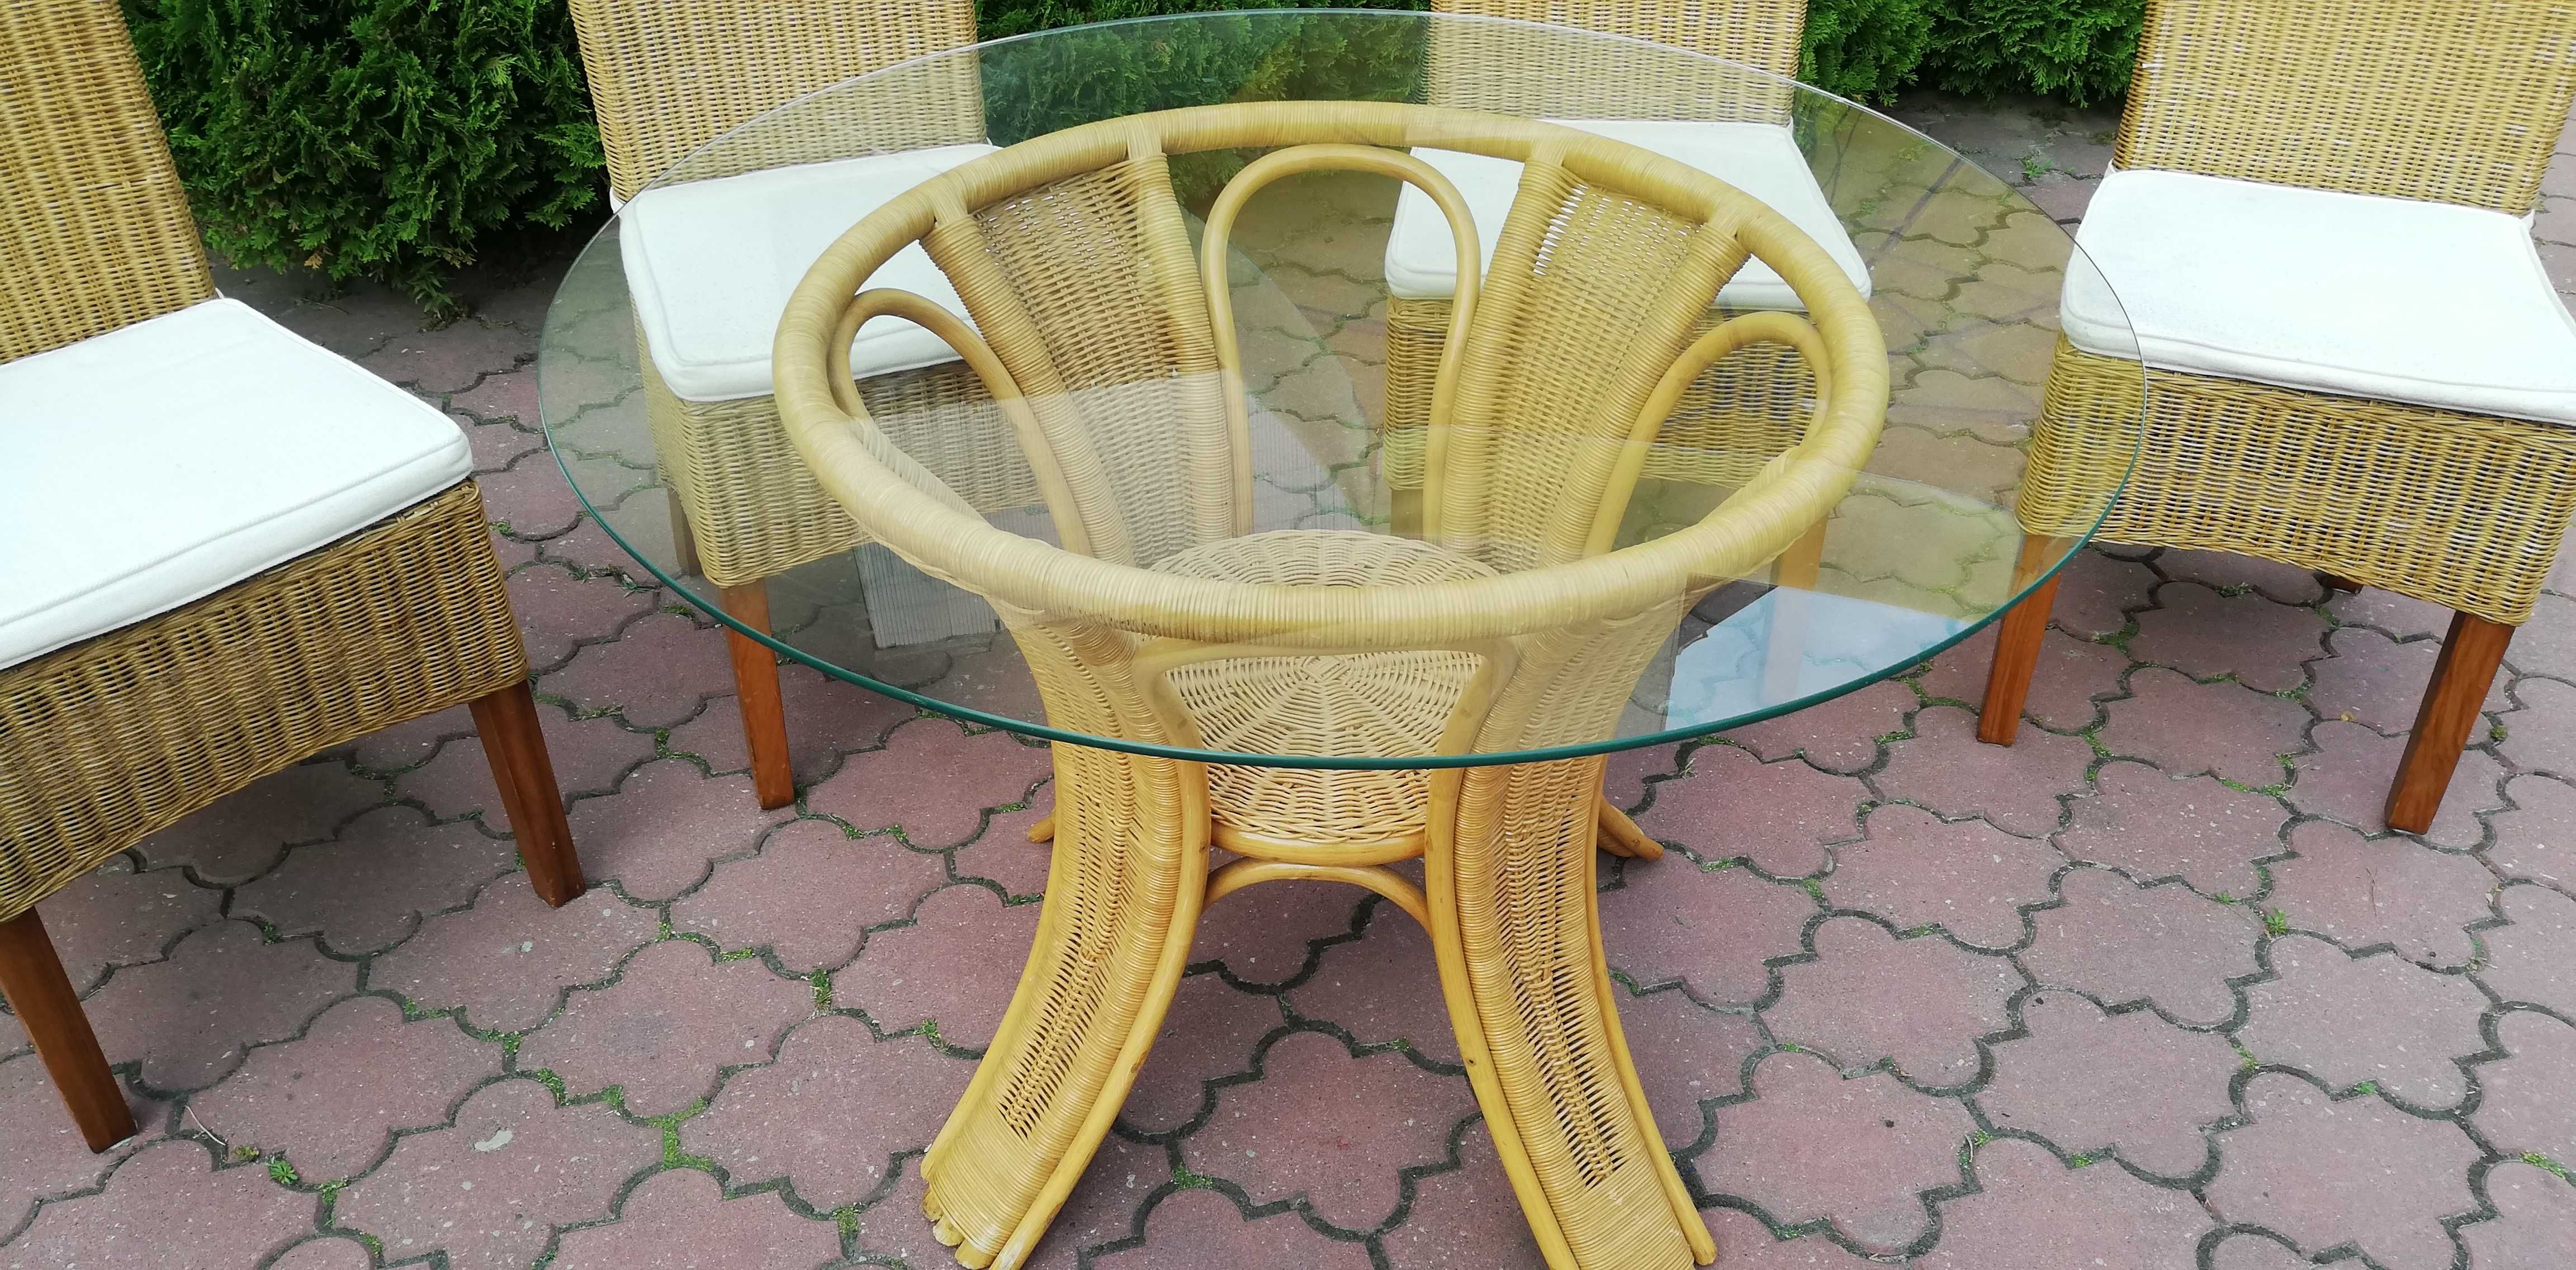 Stół okrągły rattanowy oranżeria jadalnia krzesła meble ogrodowe kompl